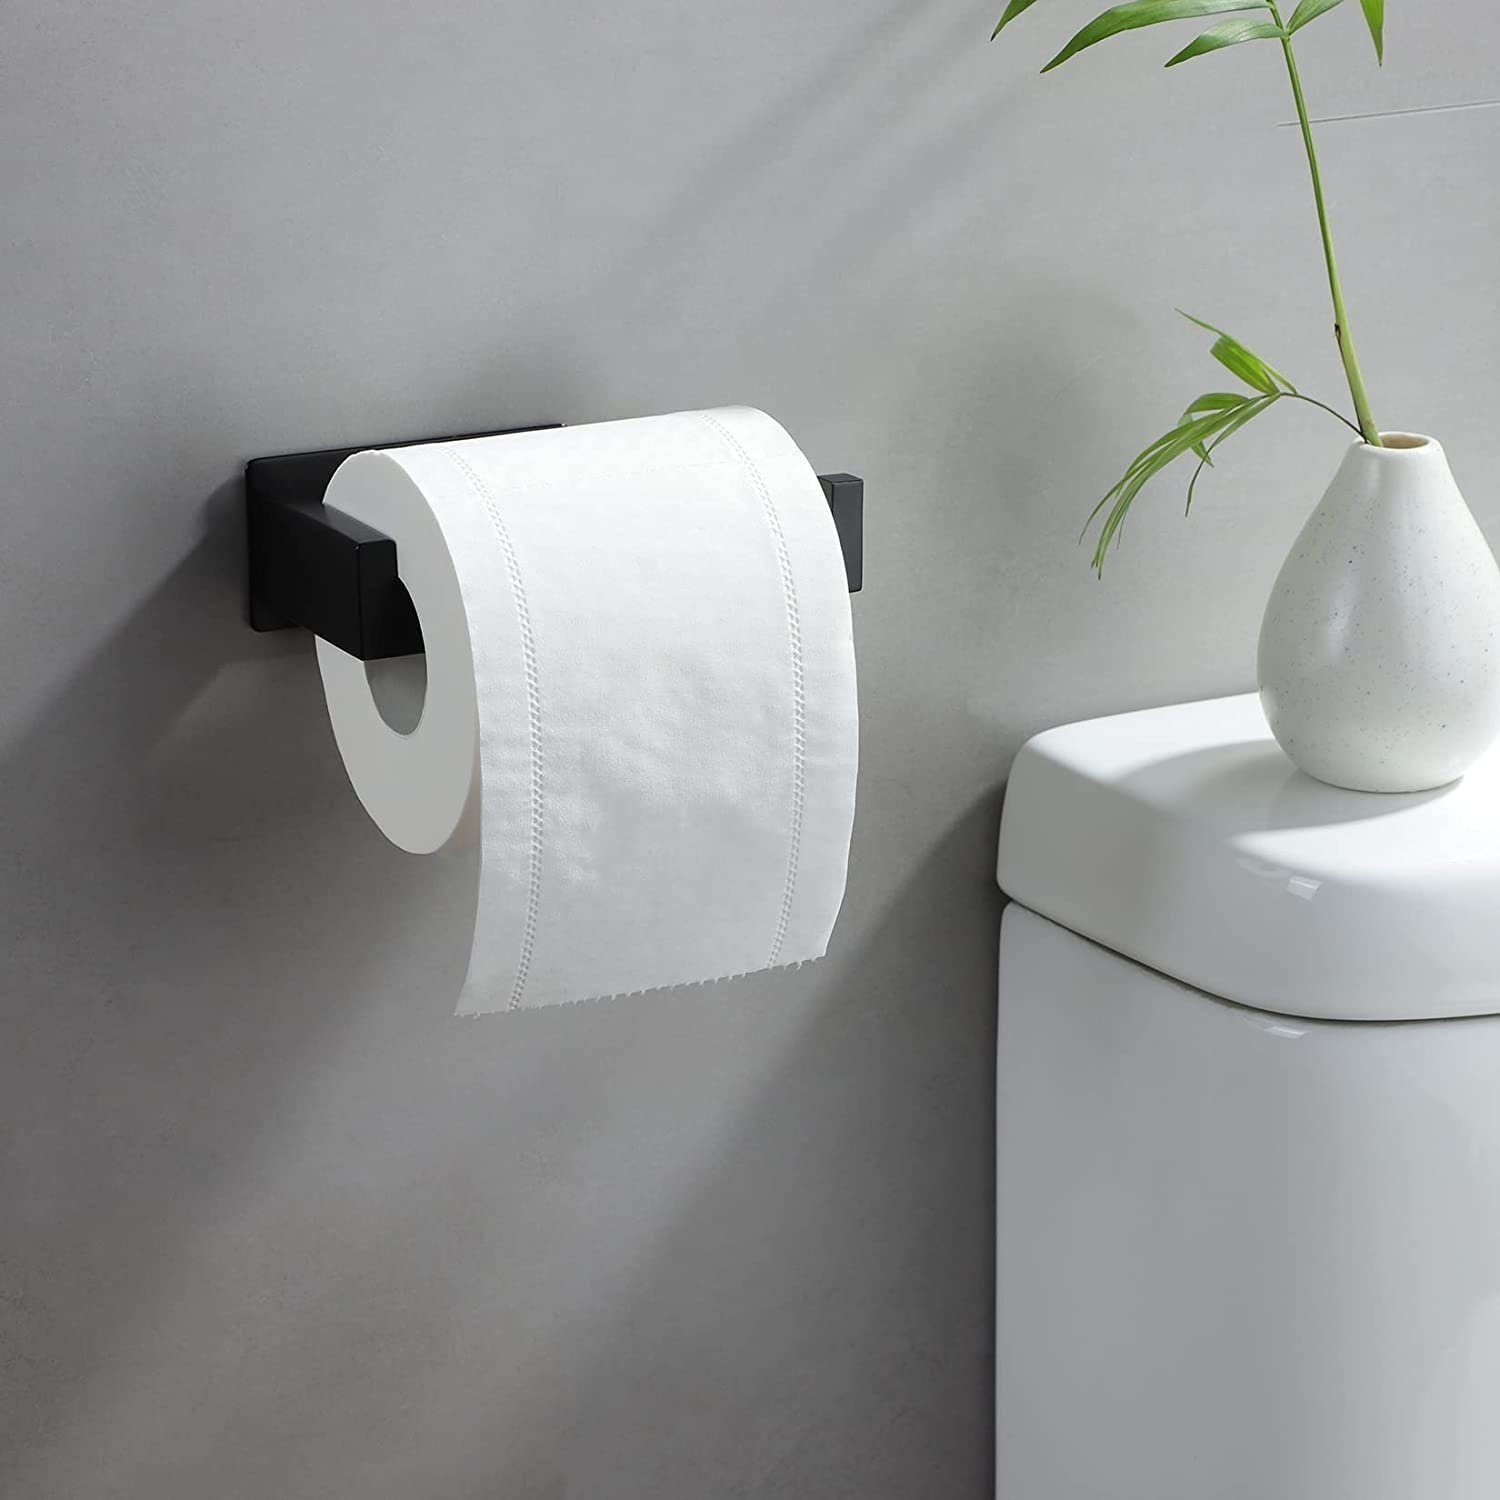 Haiaveng Toilettenpapierhalter erforderlich, Kein Bohren Bohren Toilettenpapierhalter, schwarz, kein